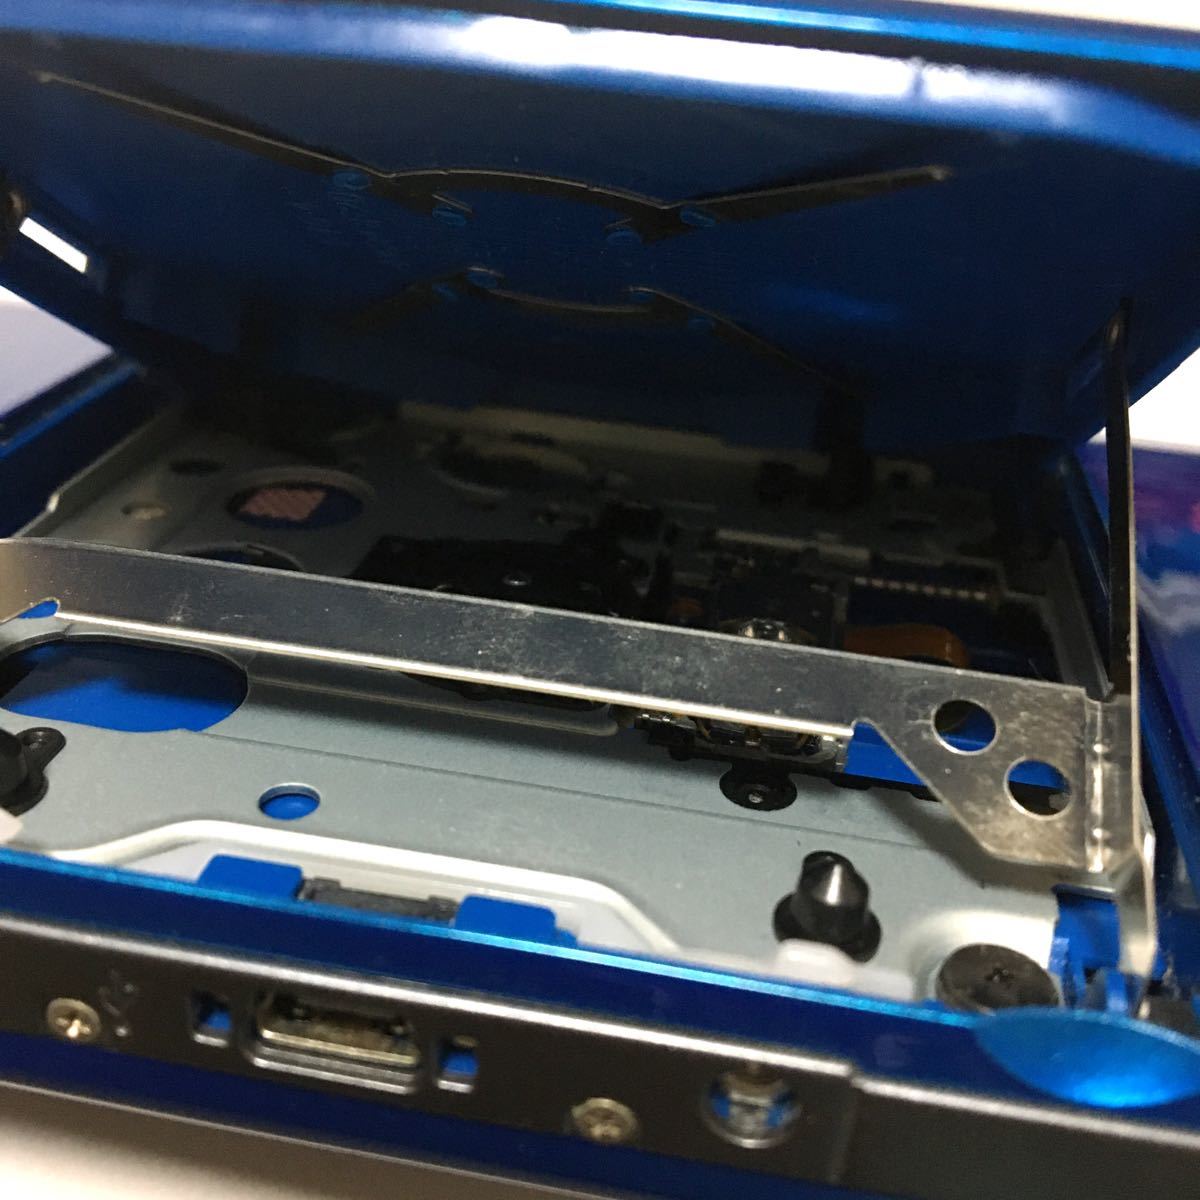 PSP-3000 本体 ブルー　ジャンク品　本体のみ